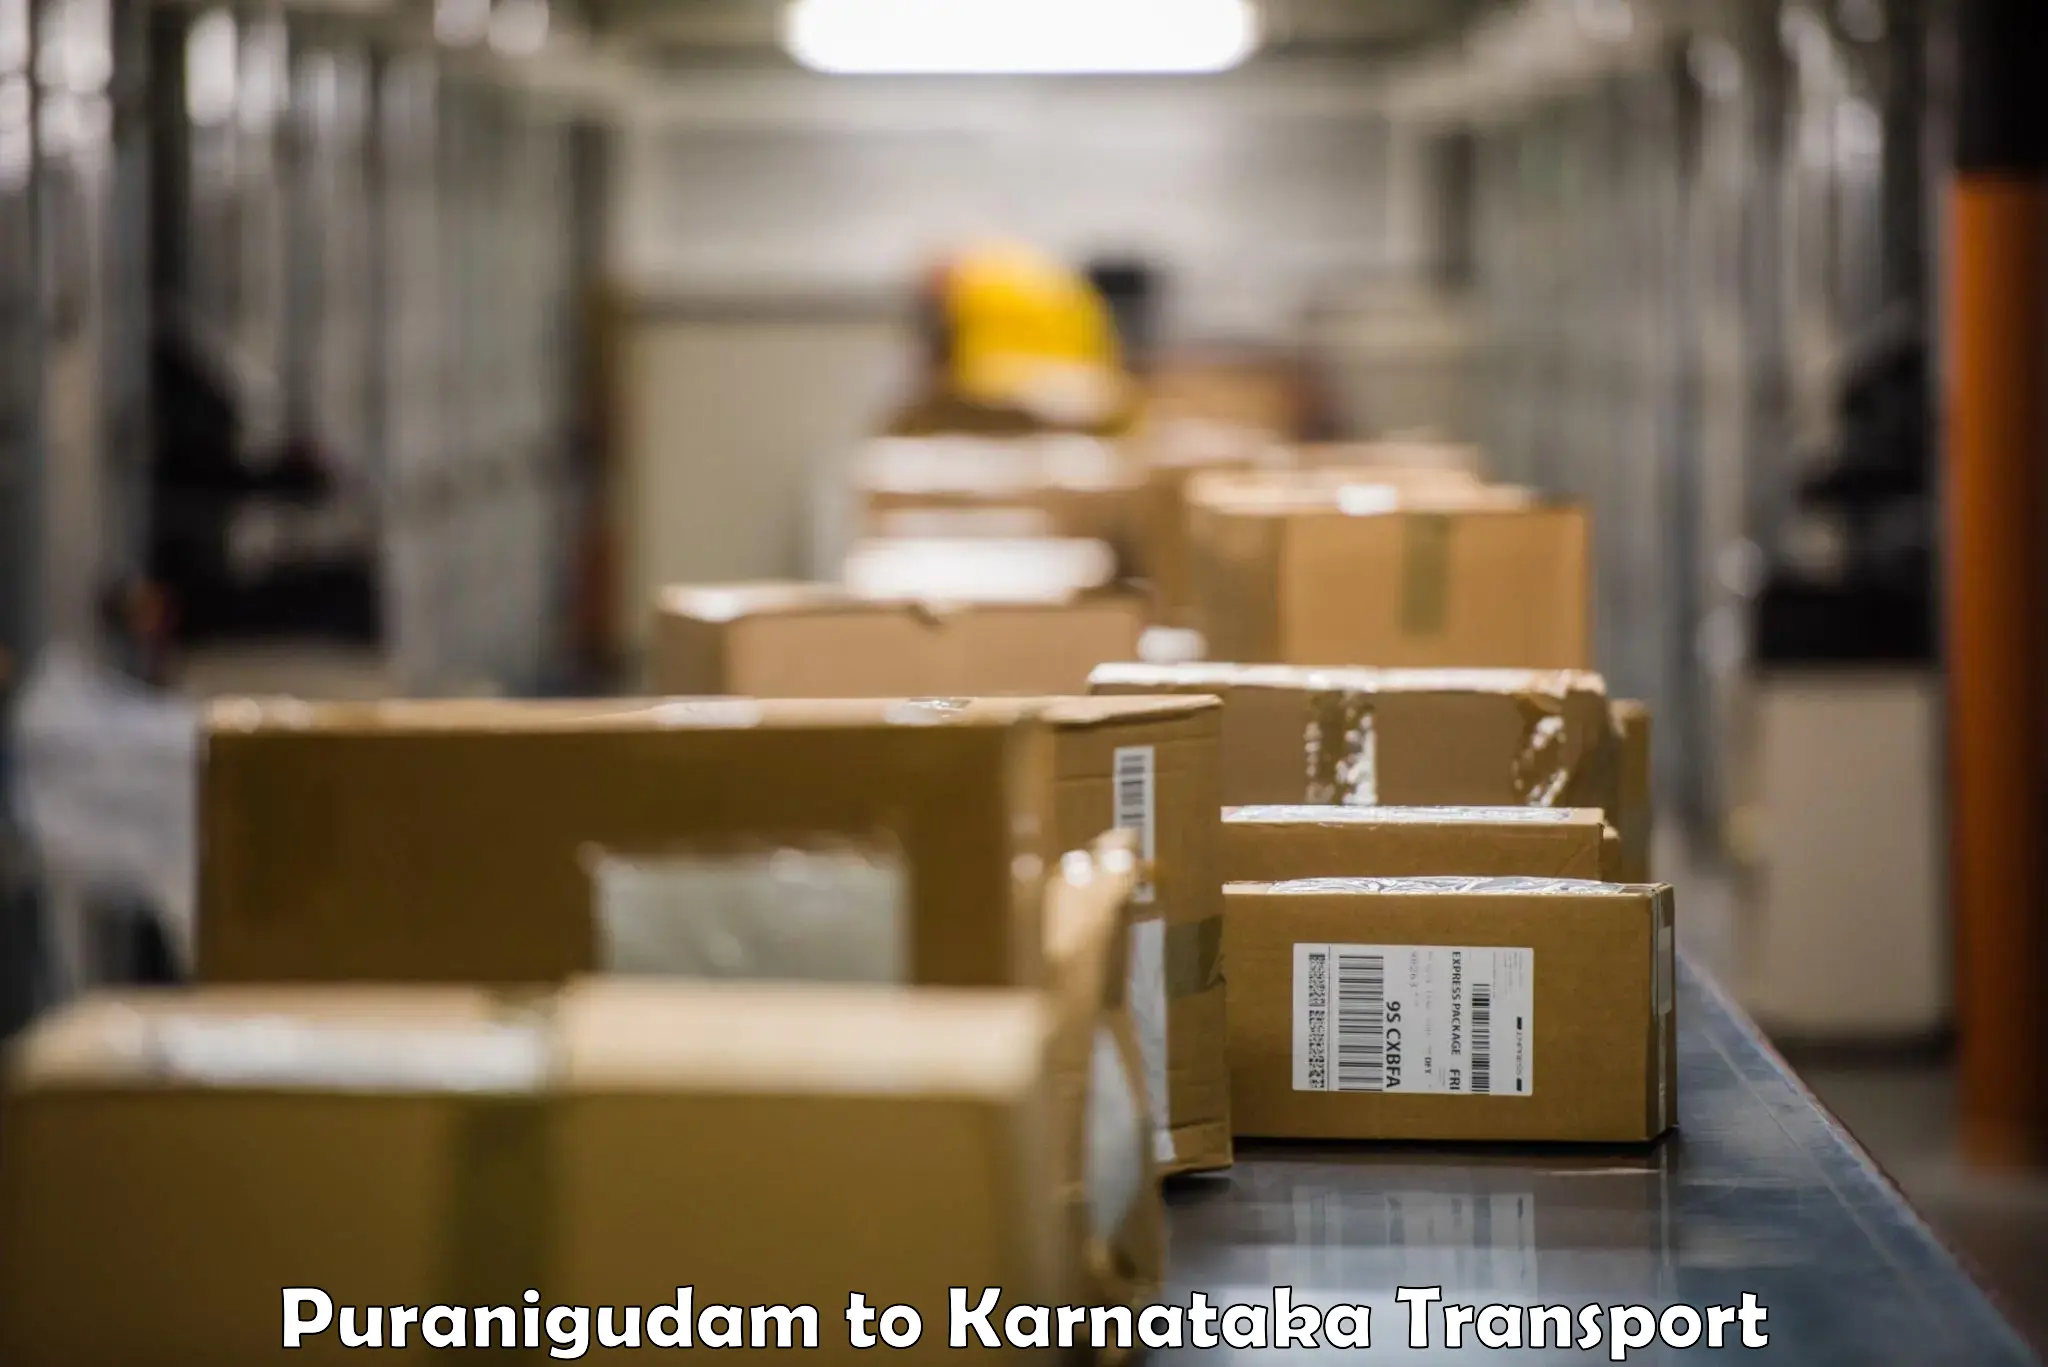 Vehicle parcel service Puranigudam to Chikkaballapur